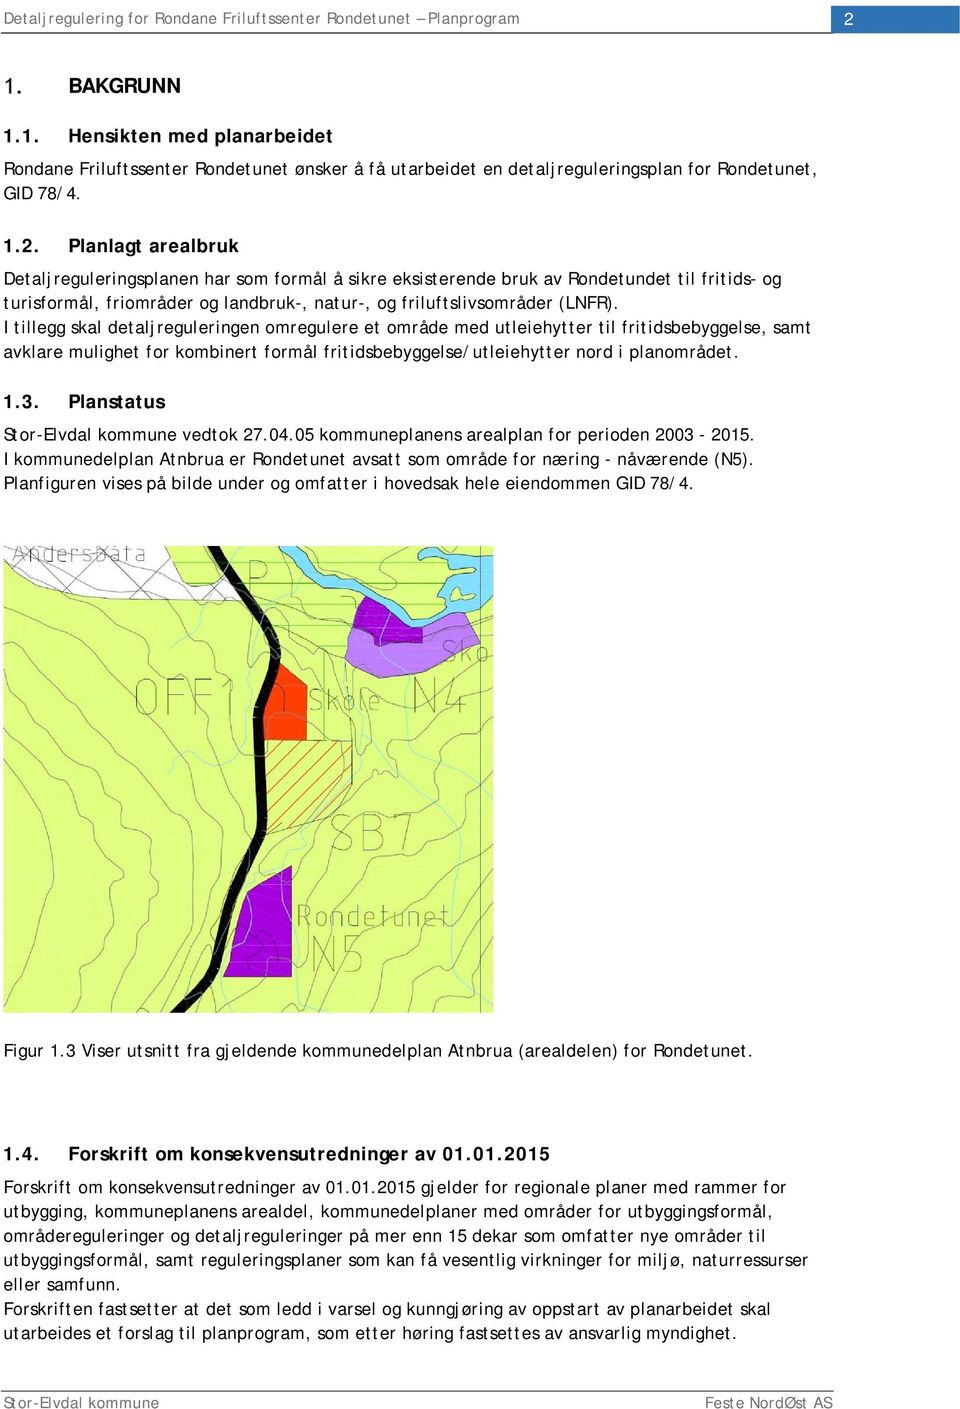 Planstatus vedtok 27.04.05 kommuneplanens arealplan for perioden 2003-2015. I kommunedelplan Atnbrua er Rondetunet avsatt som område for næring - nåværende (N5).